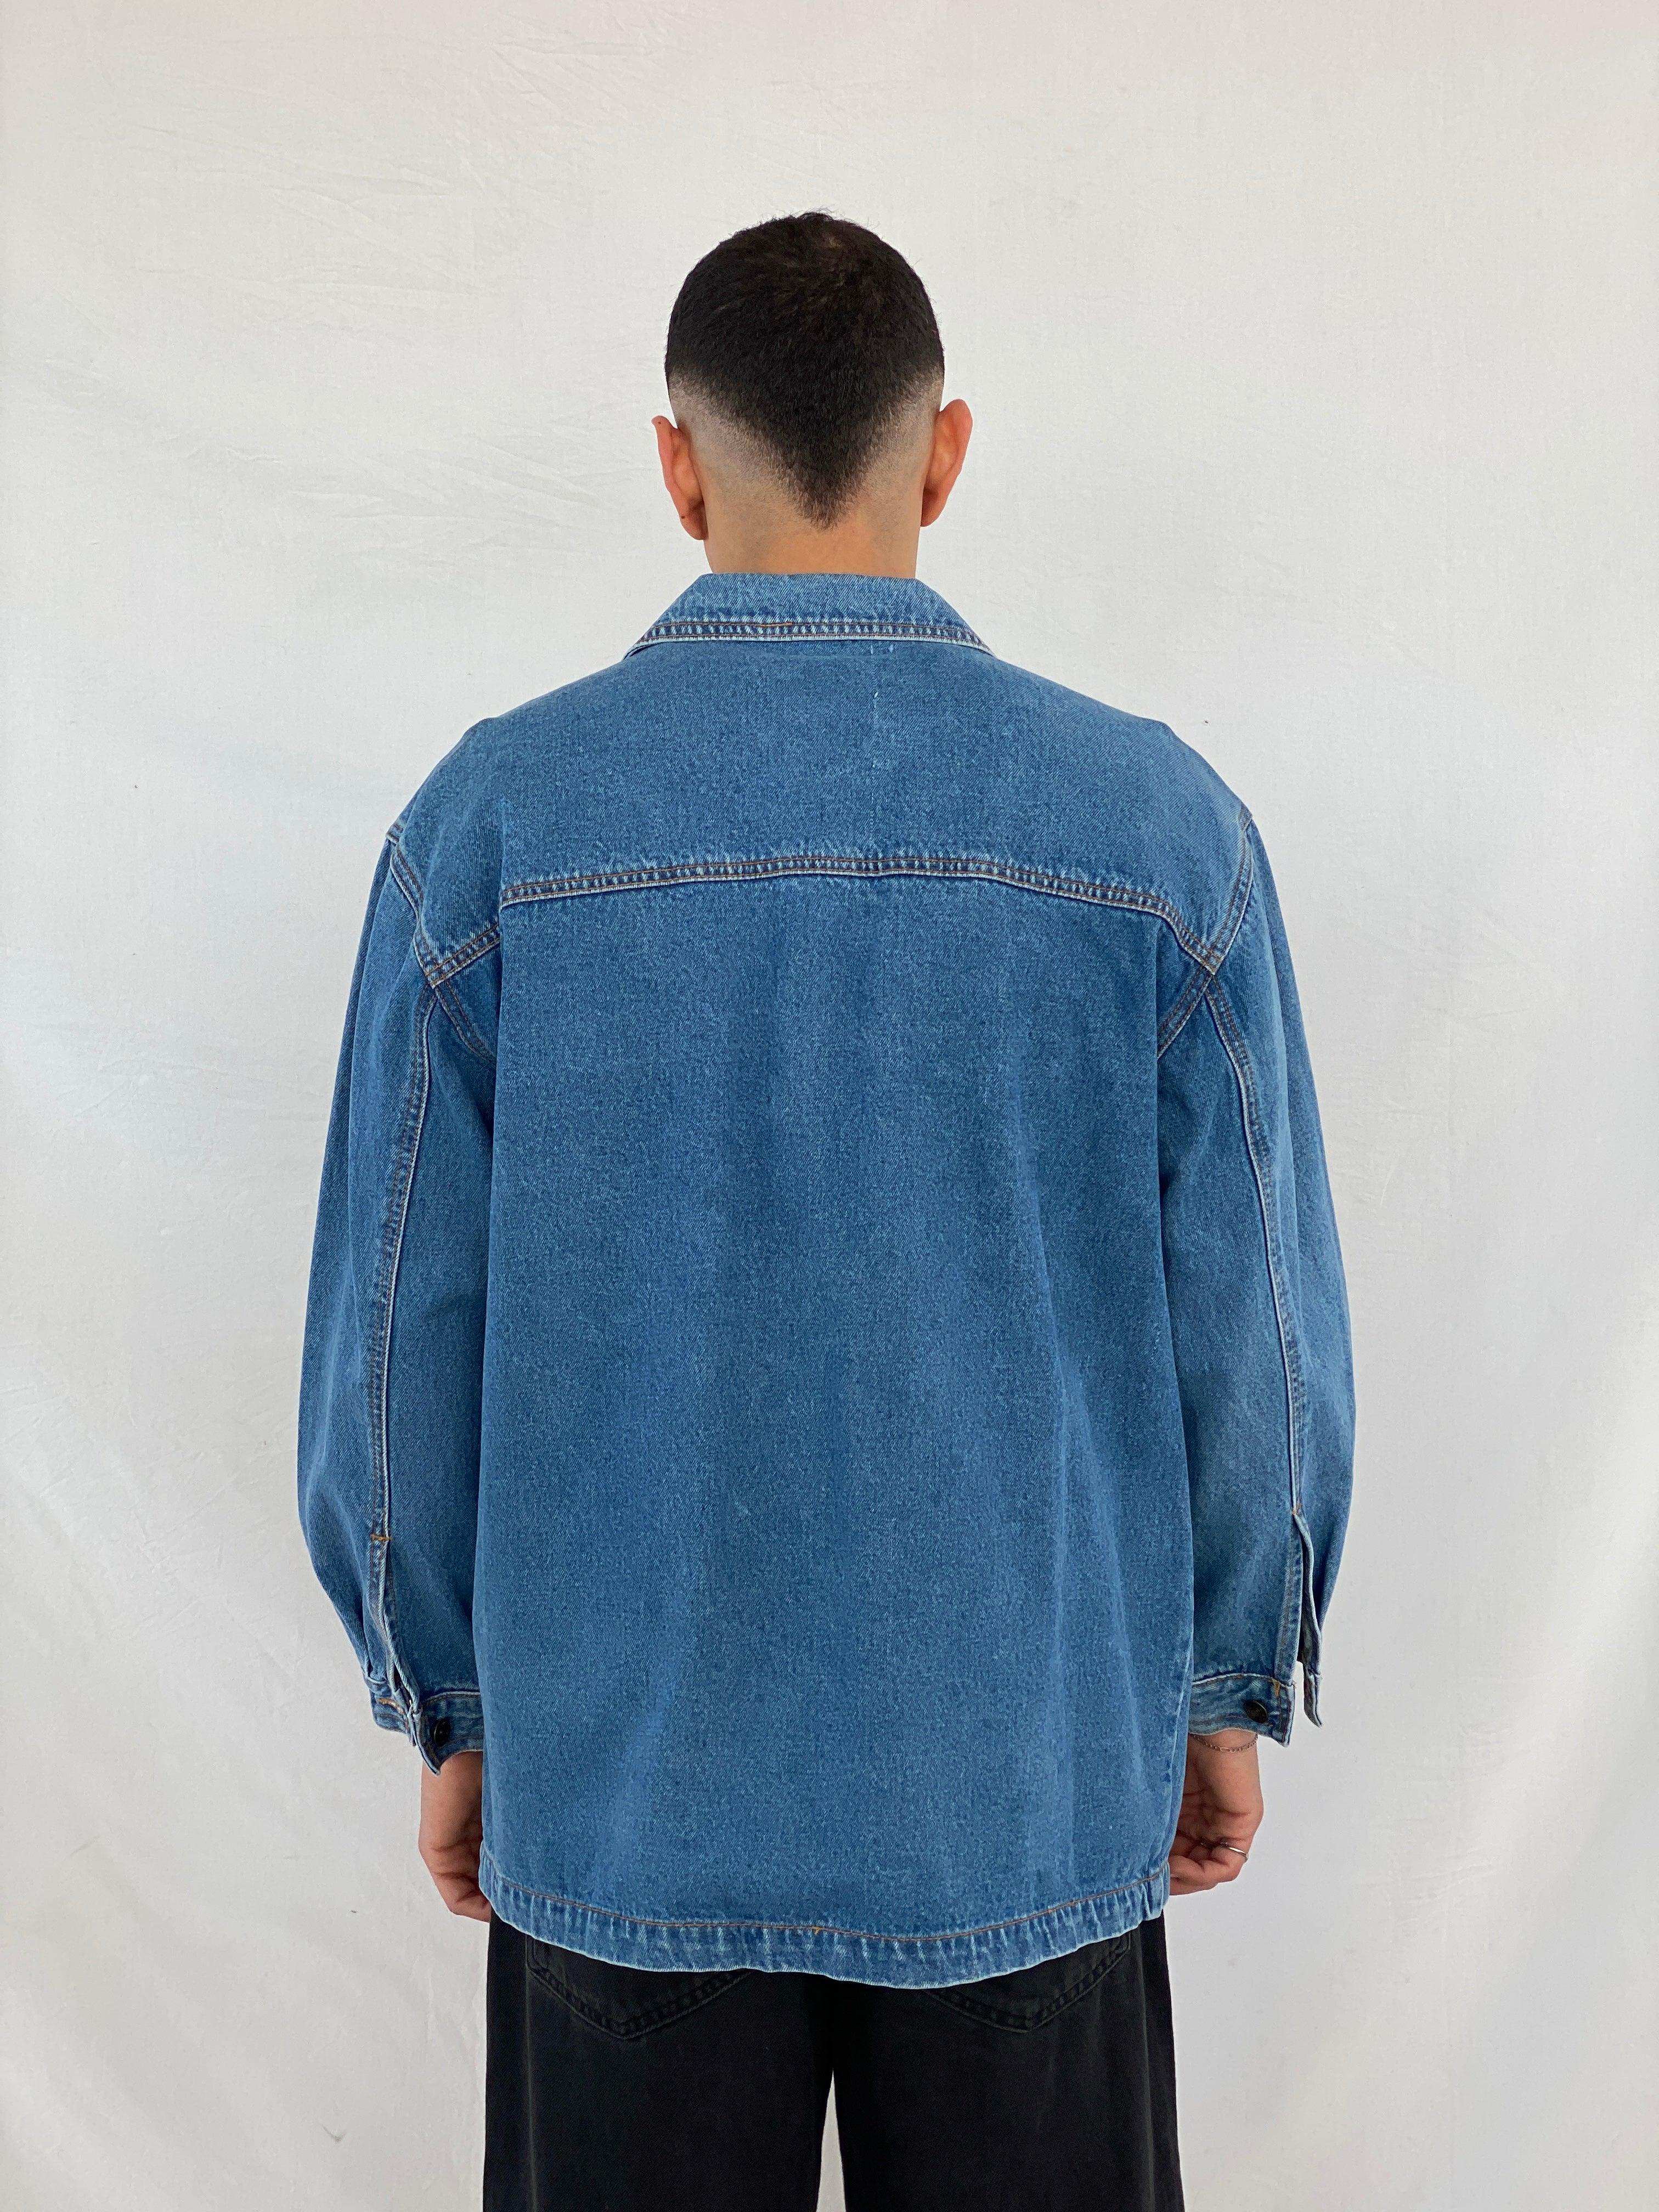 Vintage Jean Yve‘s Denim Jacket - Balagan Vintage Denim Jacket 90s, Abdullah, denim, denim jacket, NEW IN